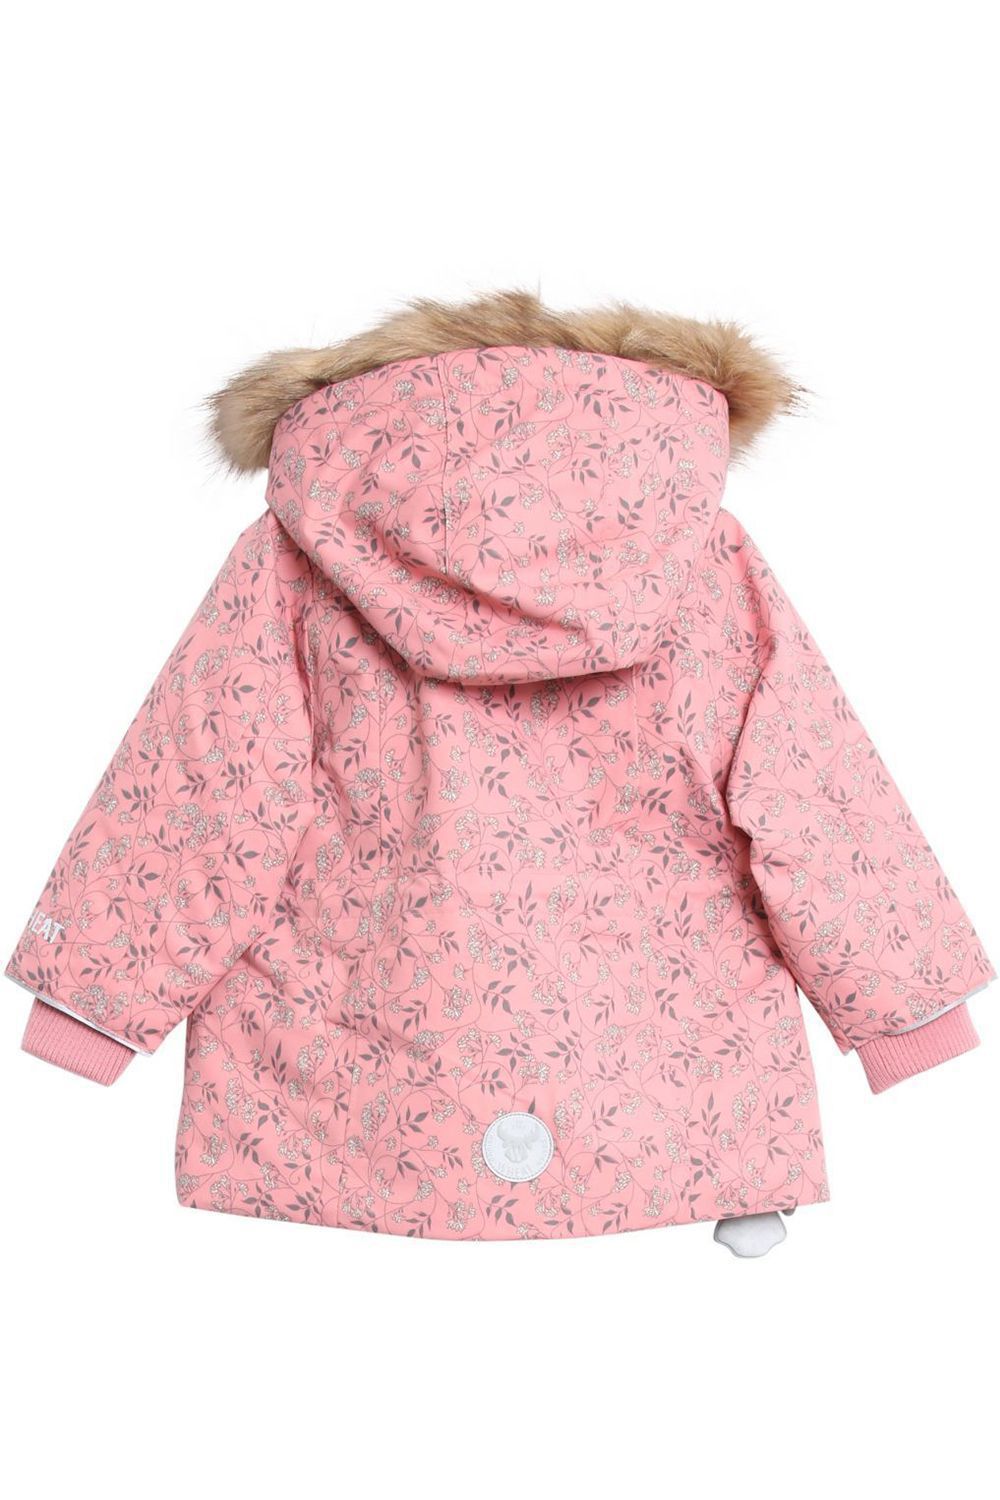 Куртка Wheat outerwear, размер 92, цвет розовый - фото 2